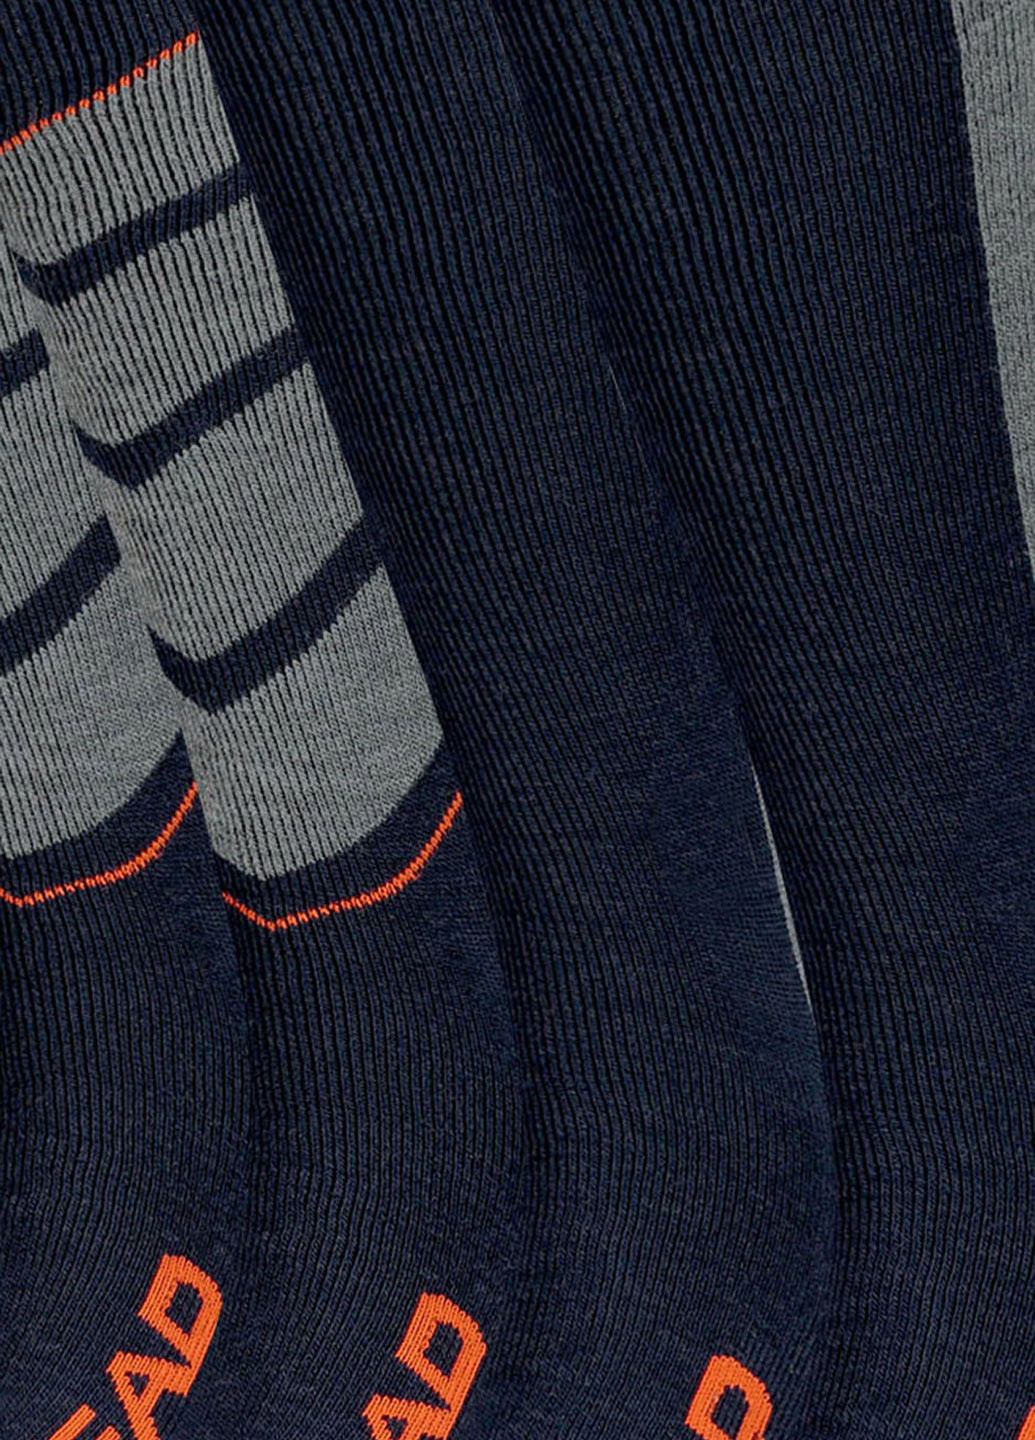 Горнолыжные носки Ski Socks (2 пары) Head (250035117)